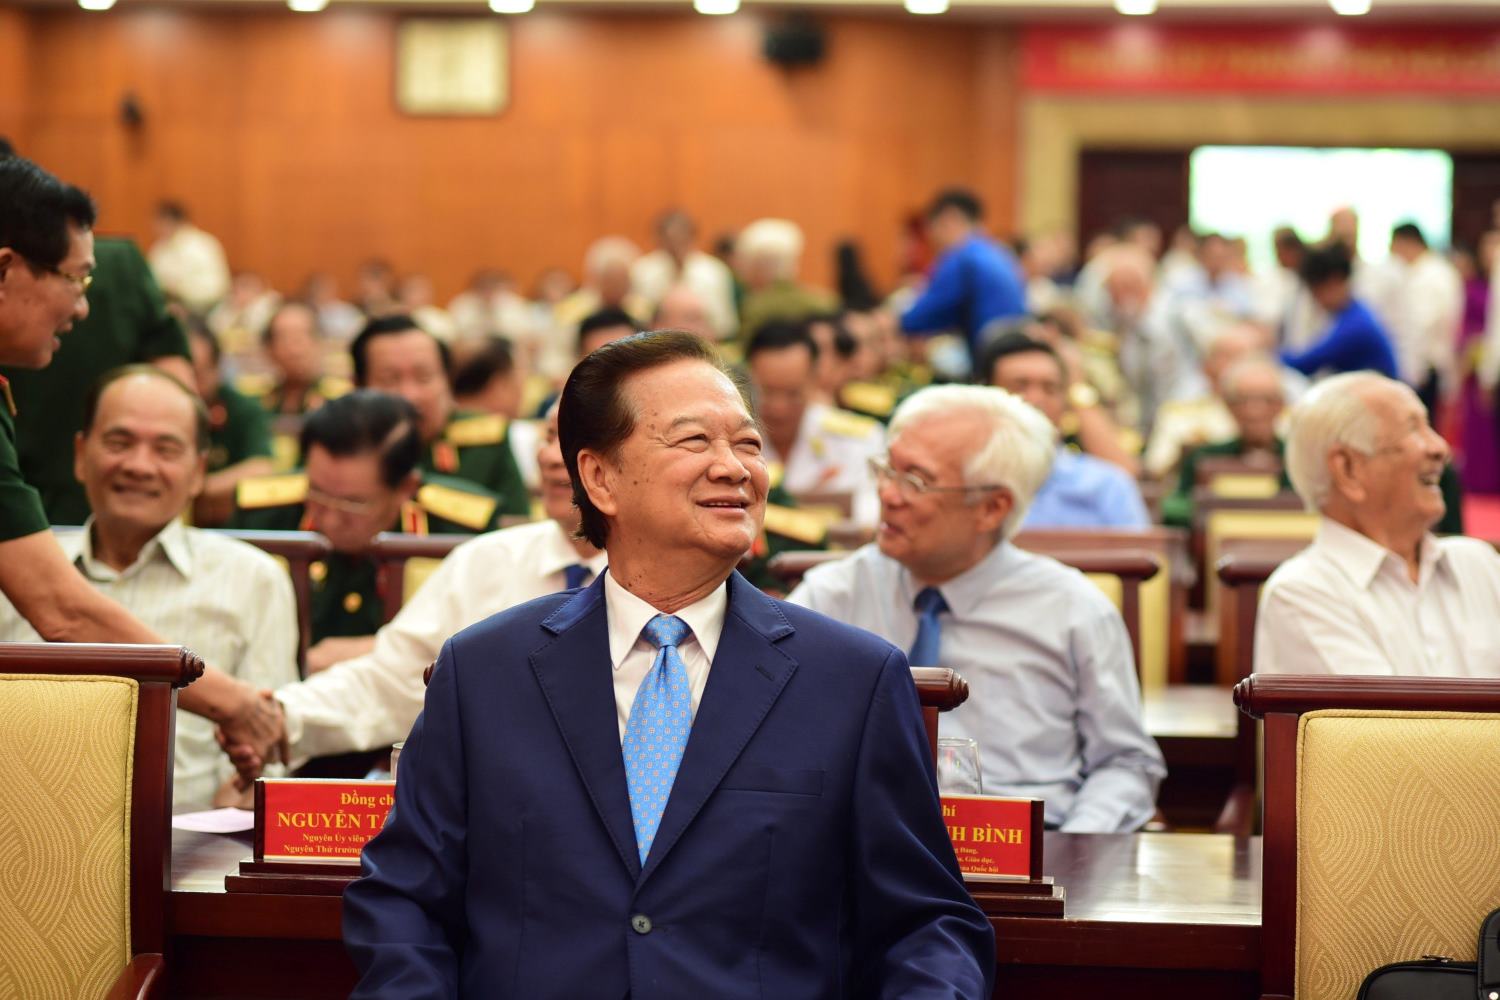  Nguyên Thủ tướng Nguyễn Tấn Dũng tham dự họp mặt.  Ảnh: Quang Huy